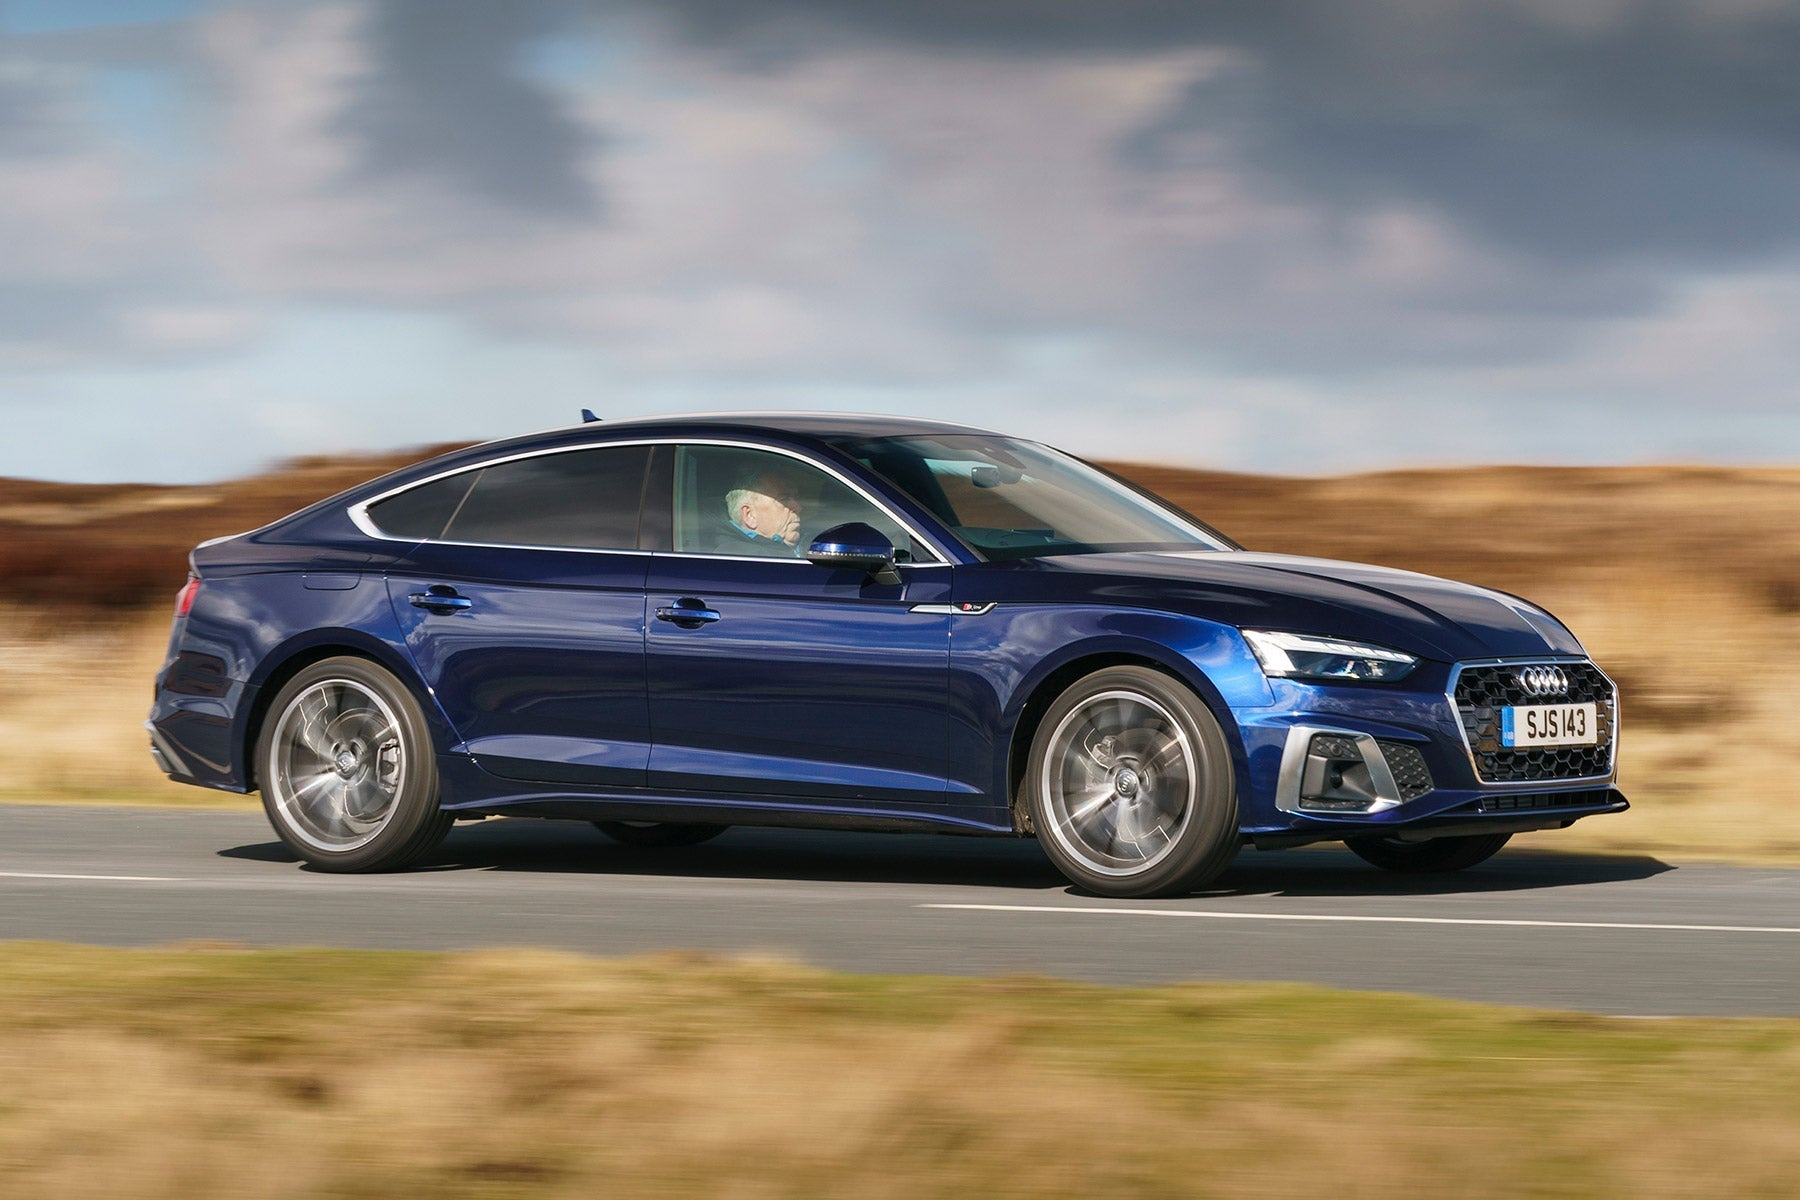 Đánh giá Audi A5 2019 về động cơ và khả năng vận hành